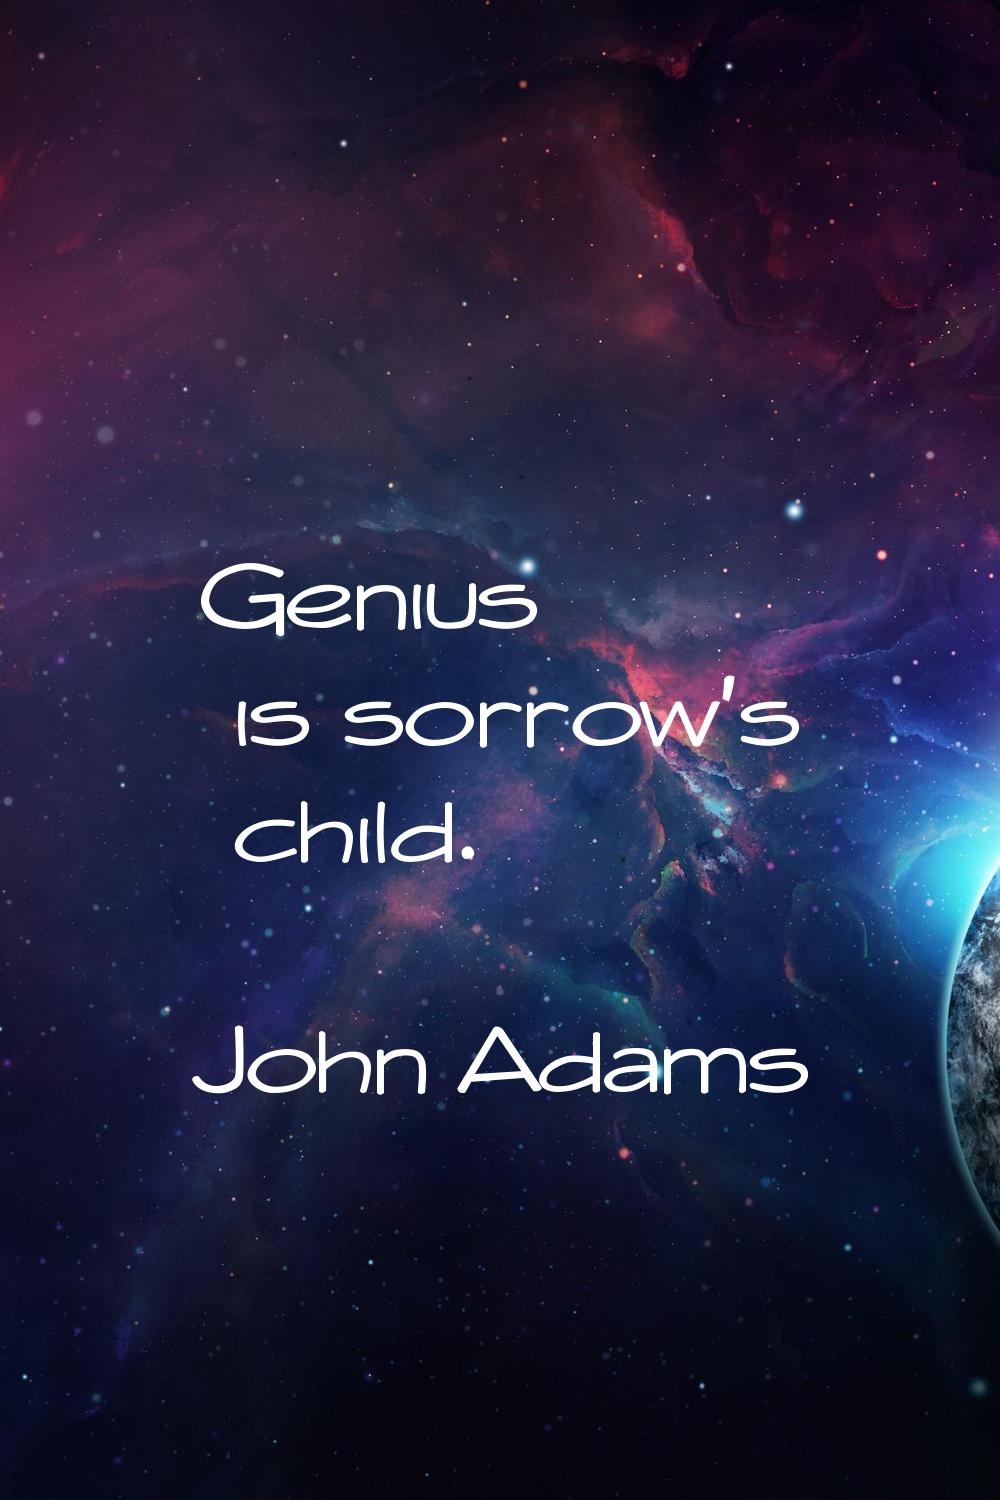 Genius is sorrow's child.